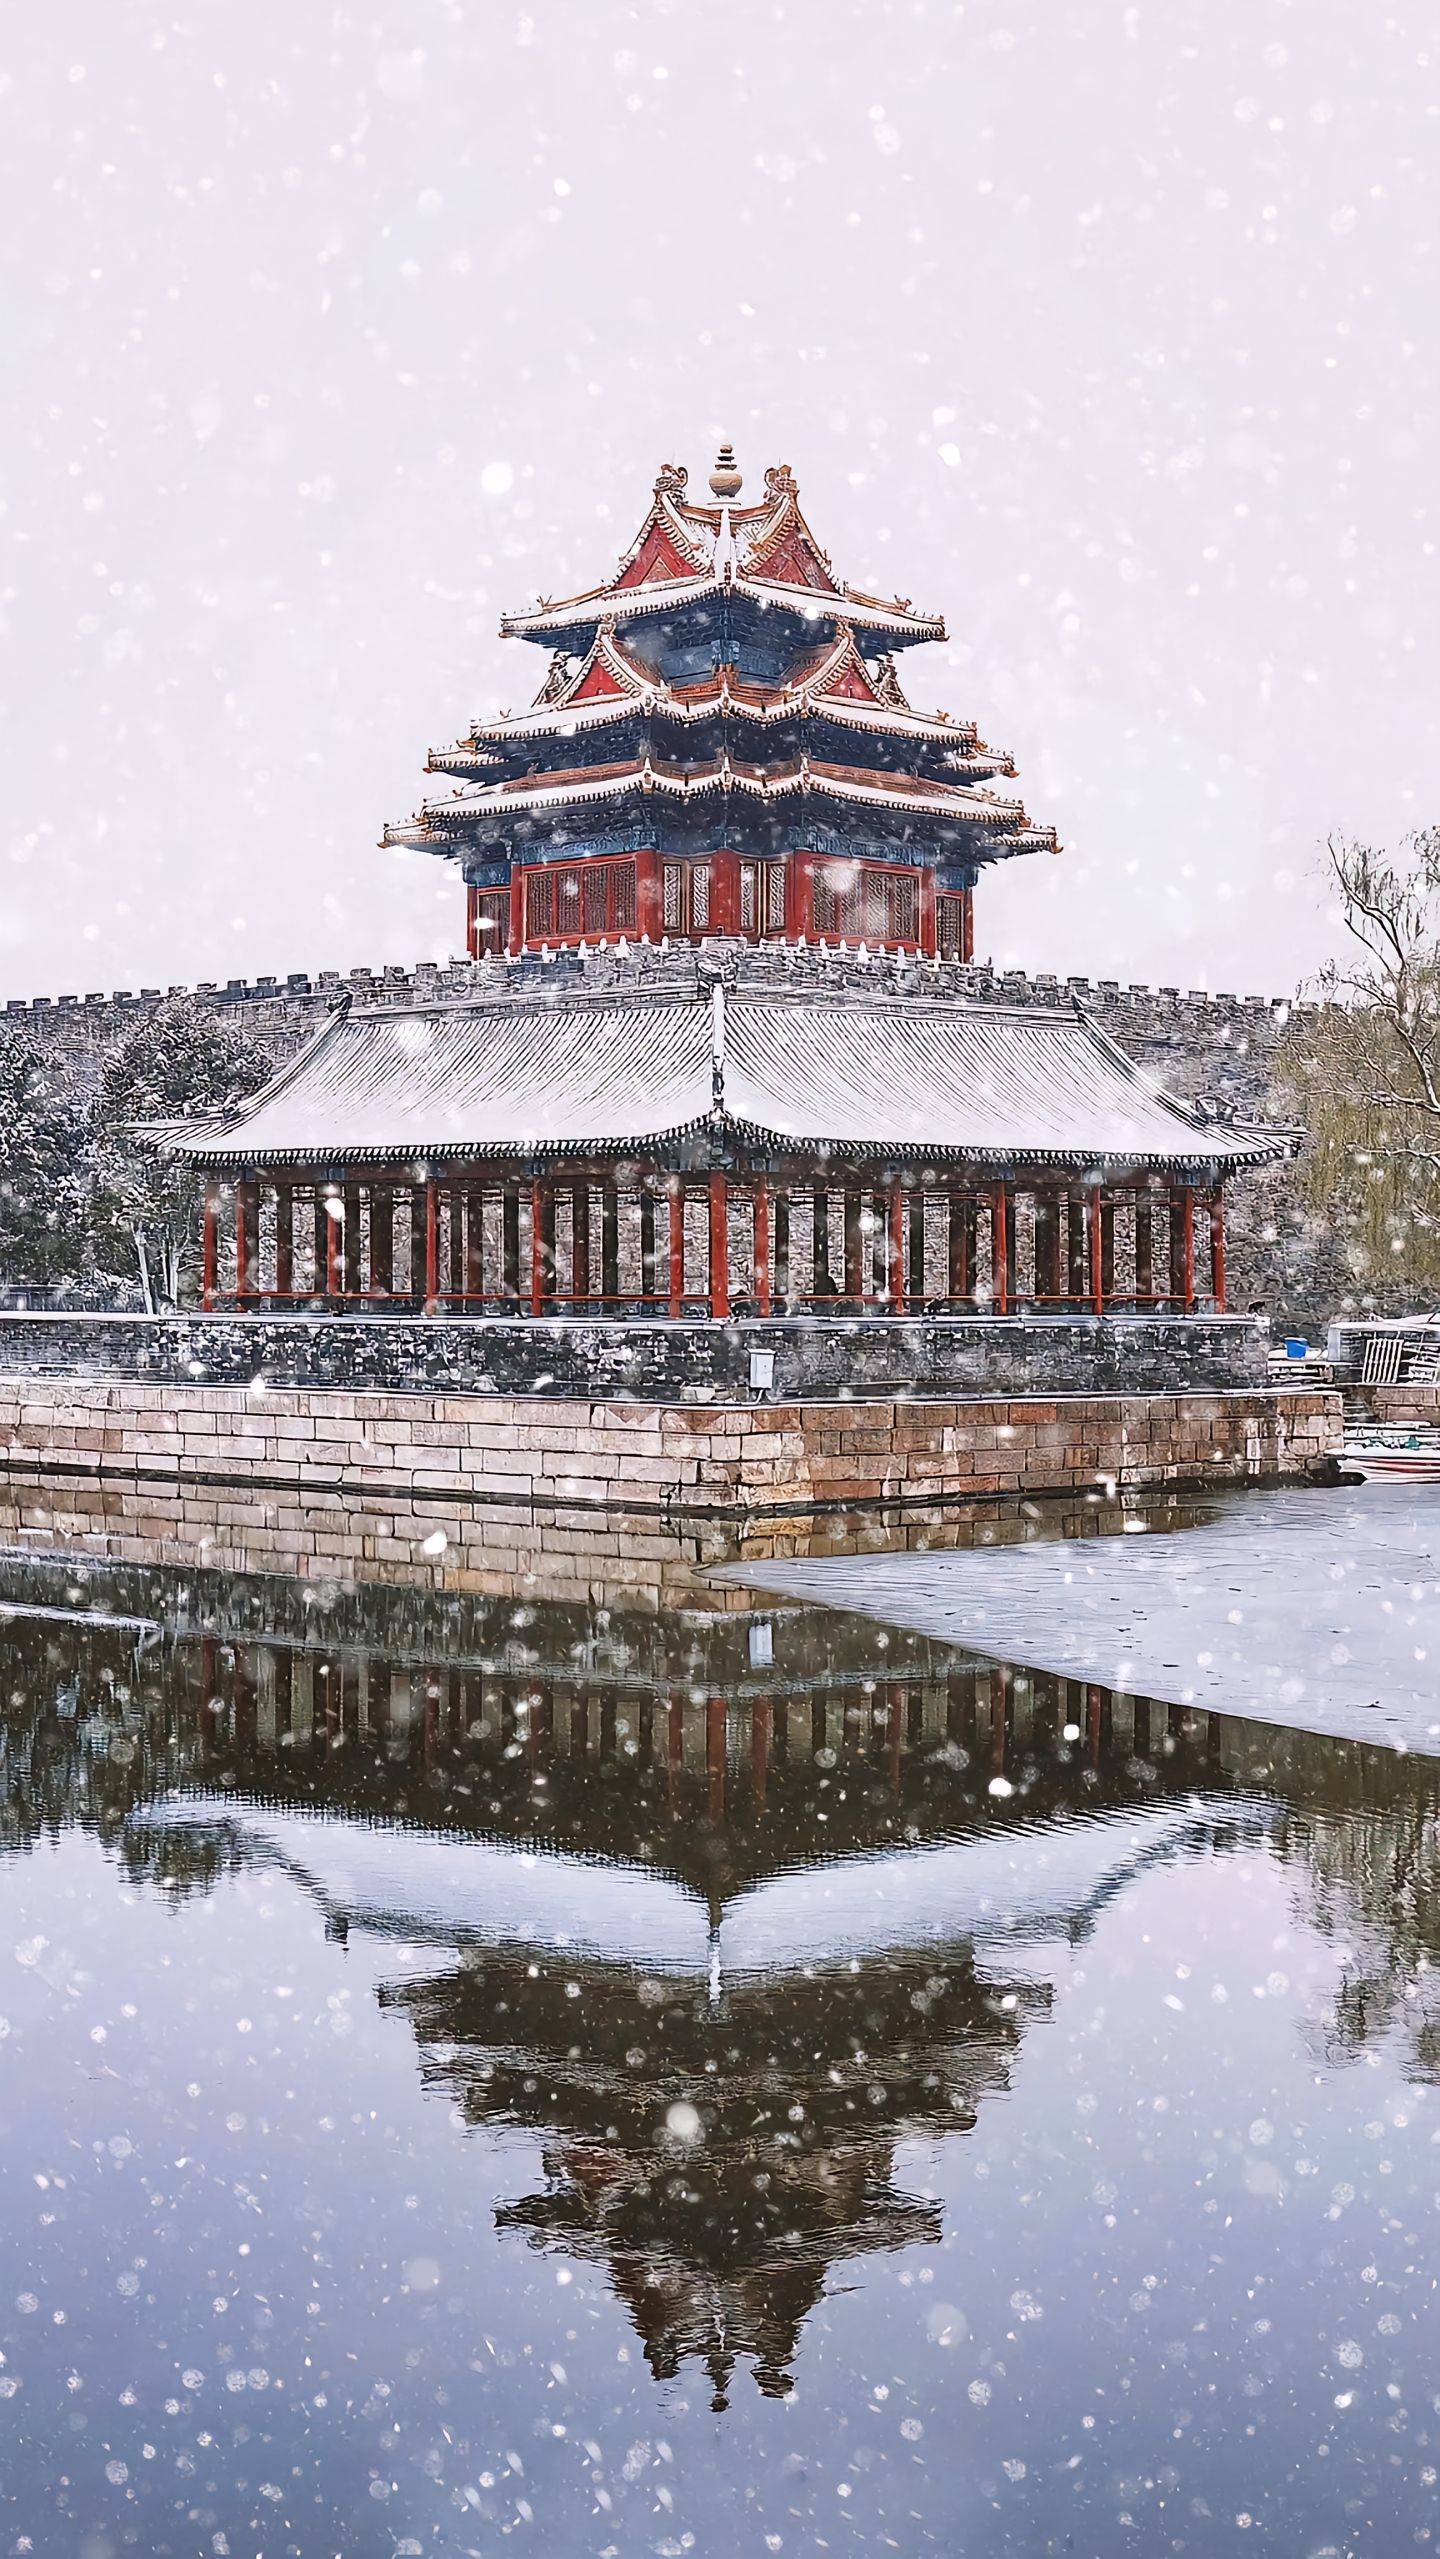 北京冬季旅行攻略:热门景点一网打尽,让你畅游无忧